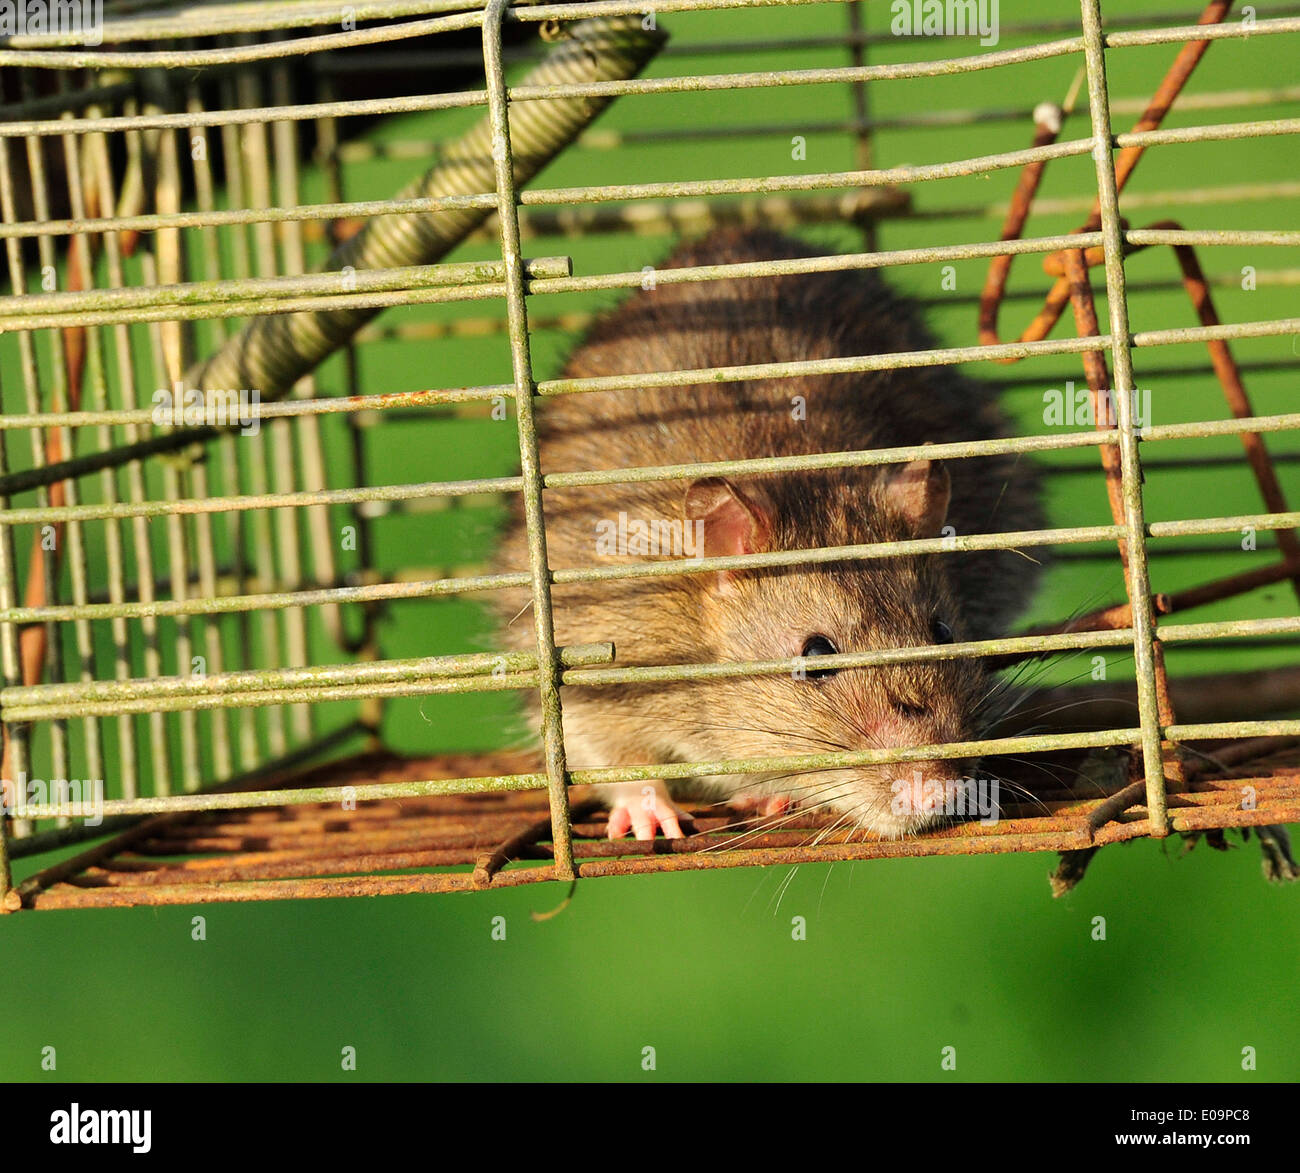 Paquete de 2 trampas humanas para ratas, trampas para ratas de ratón vivo,  atrapan y liberan para interiores y exteriores, trampas para animales